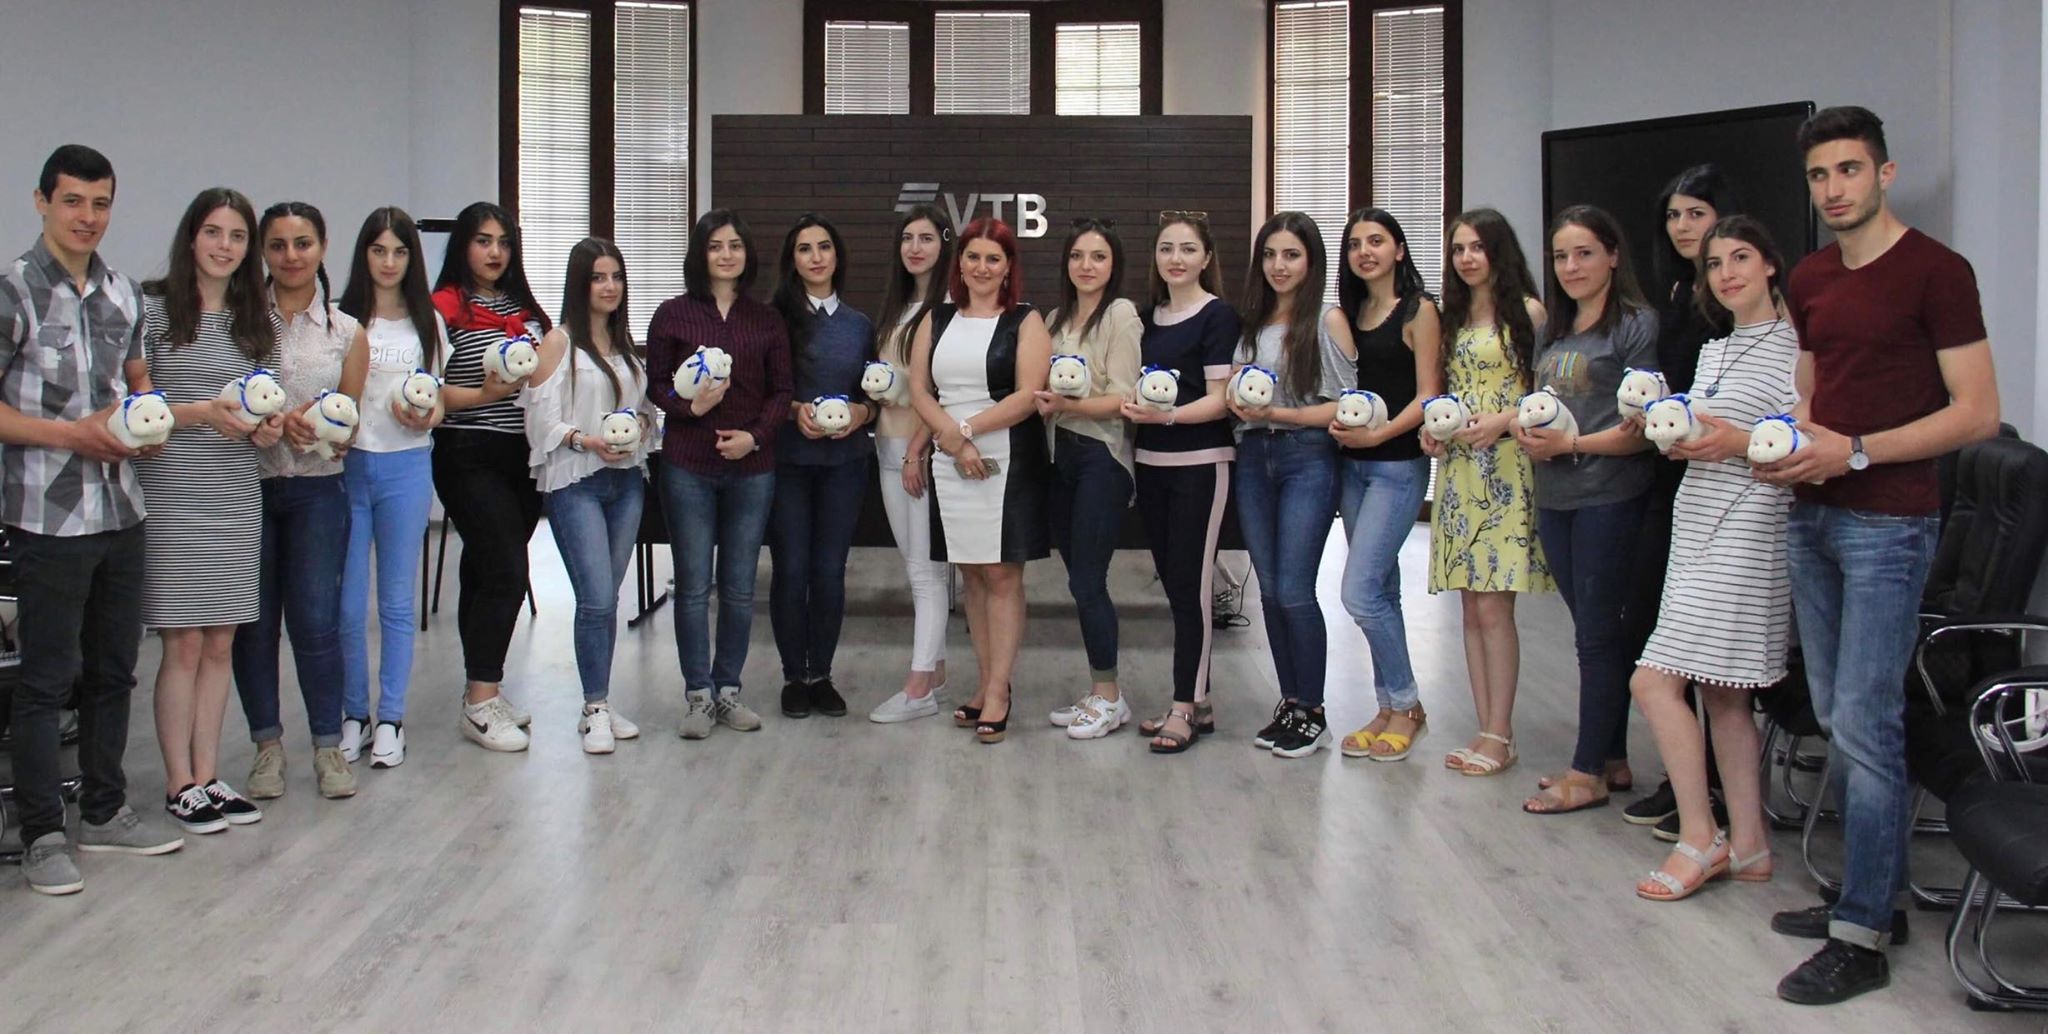 ՎՏԲ-Հայաստան Բանկը հյուրընկալել է ուսանողներ Գյումրիից